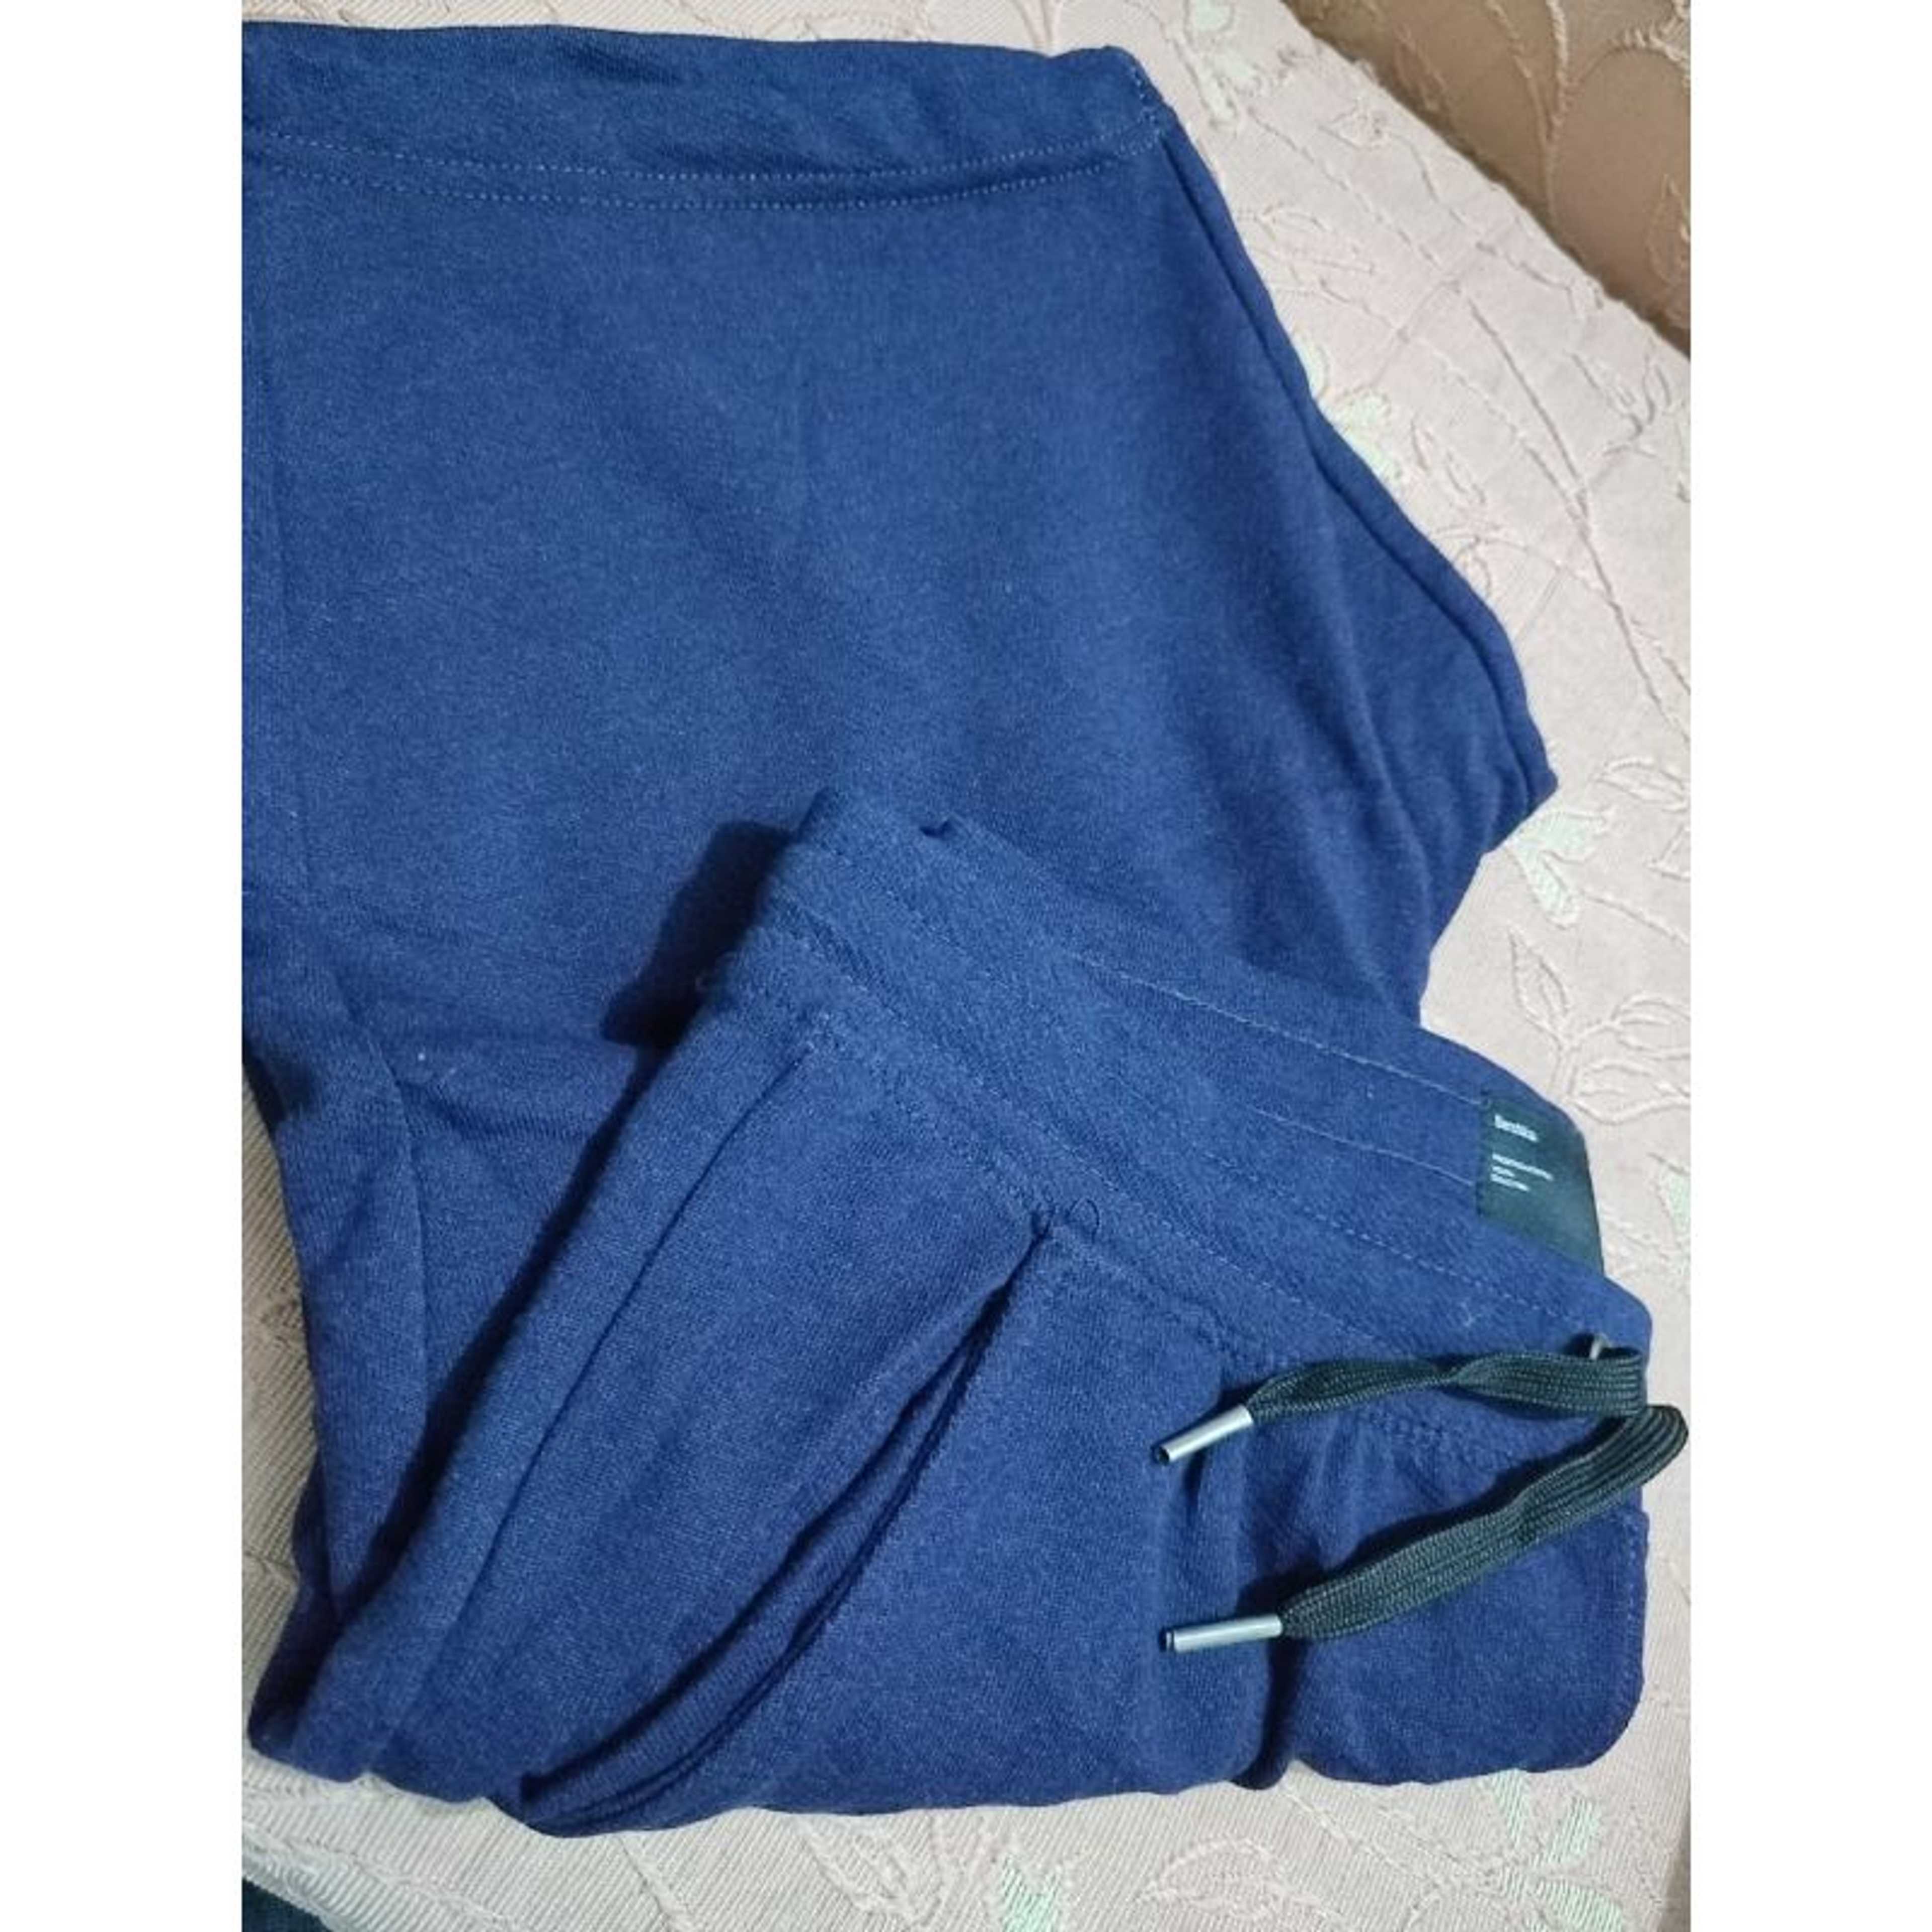 Branded Leftover Shorts in Blue Color